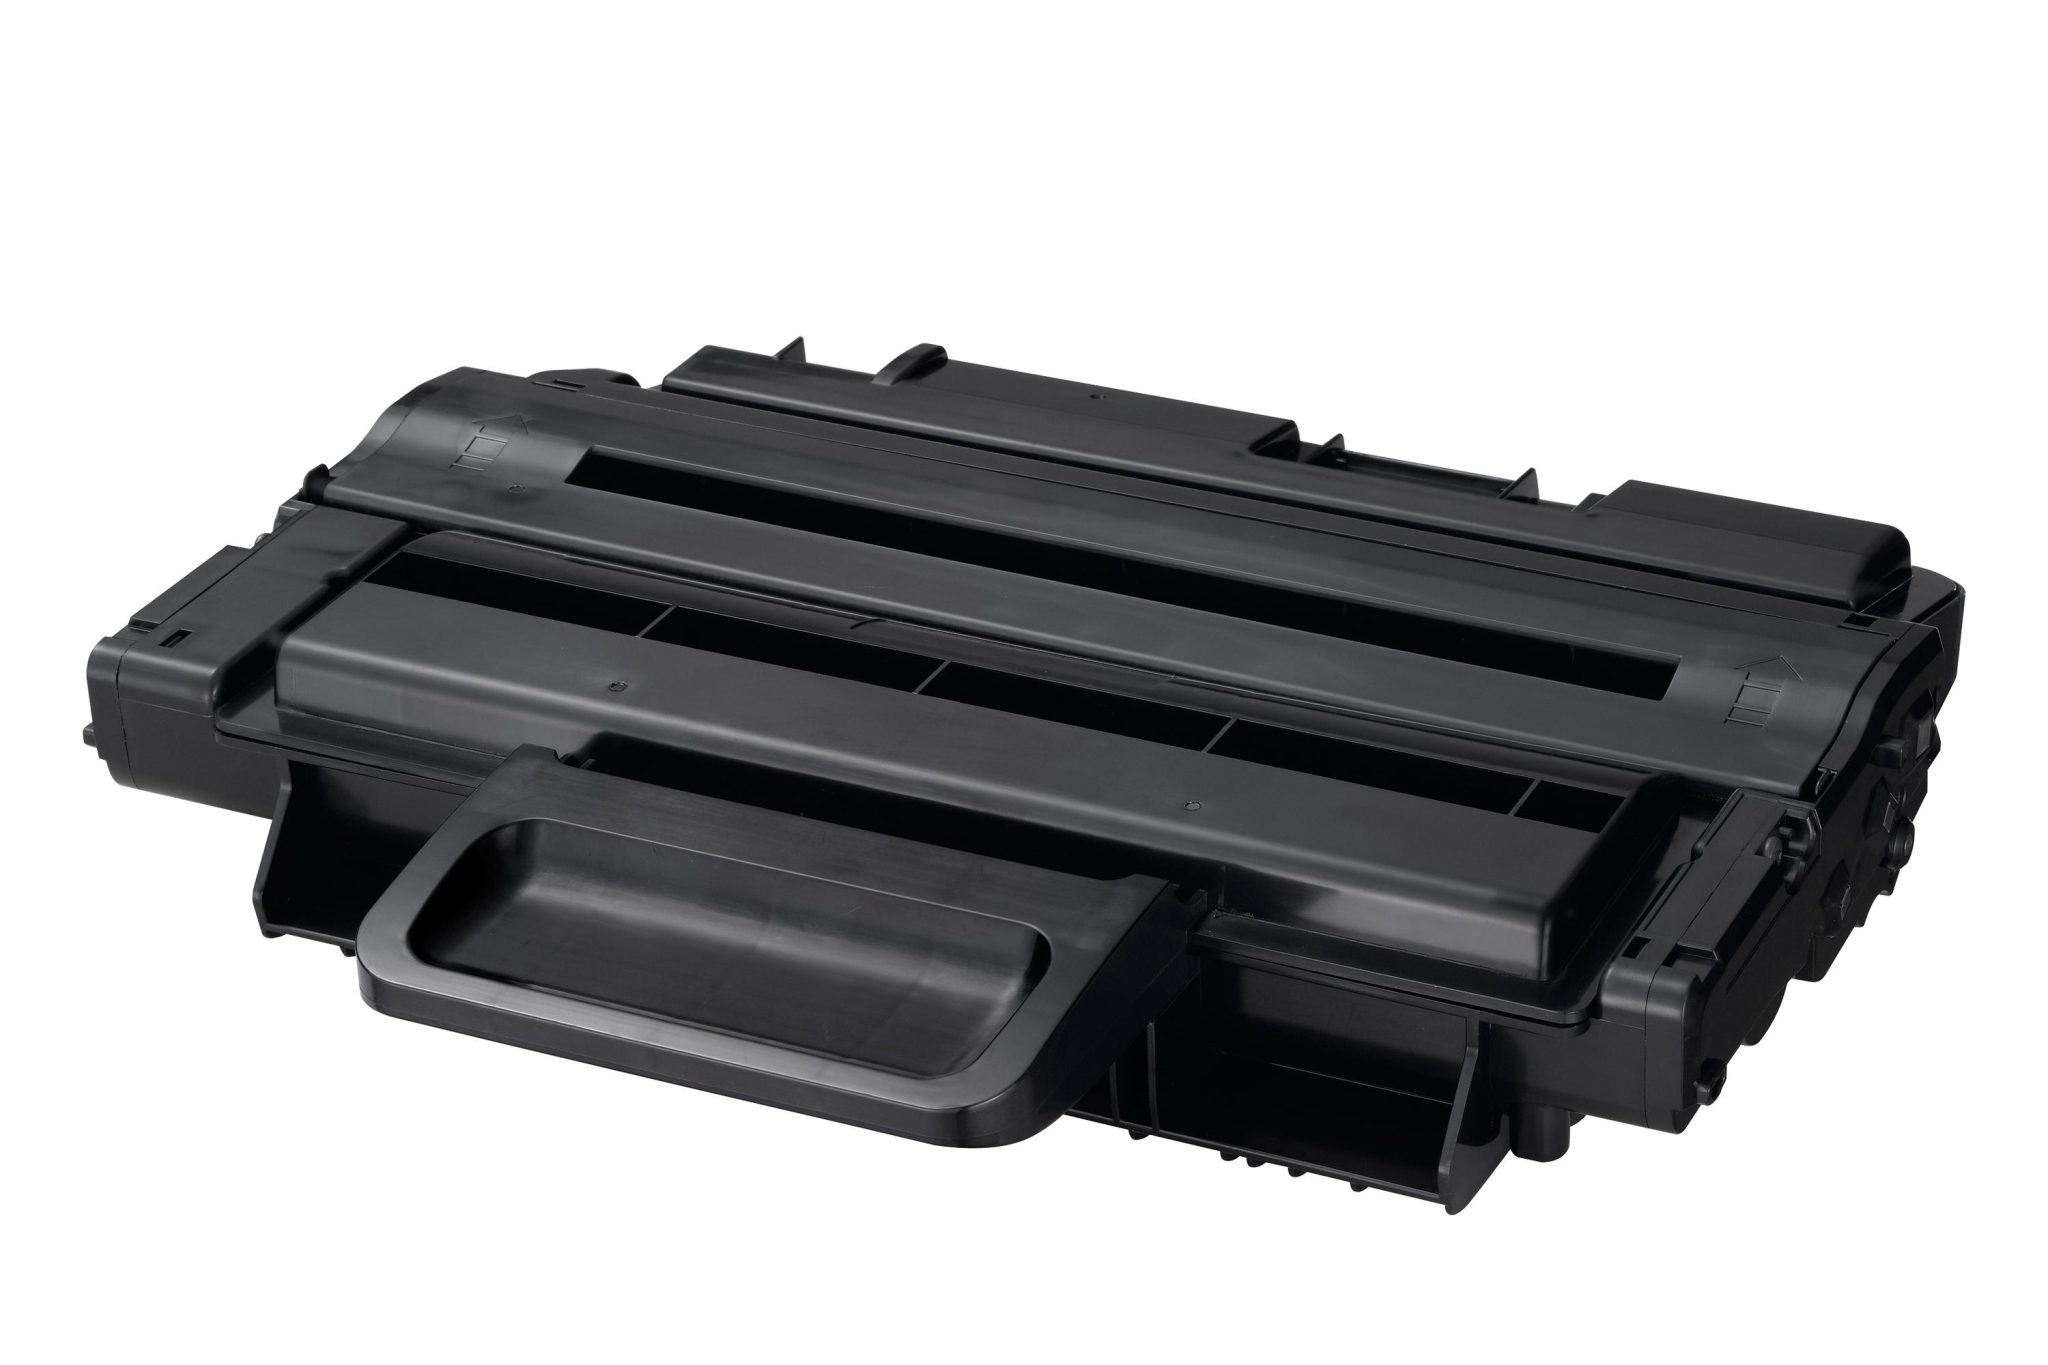 SAMSUNG Toner Cartridge Black 2.000vel 1 Pack